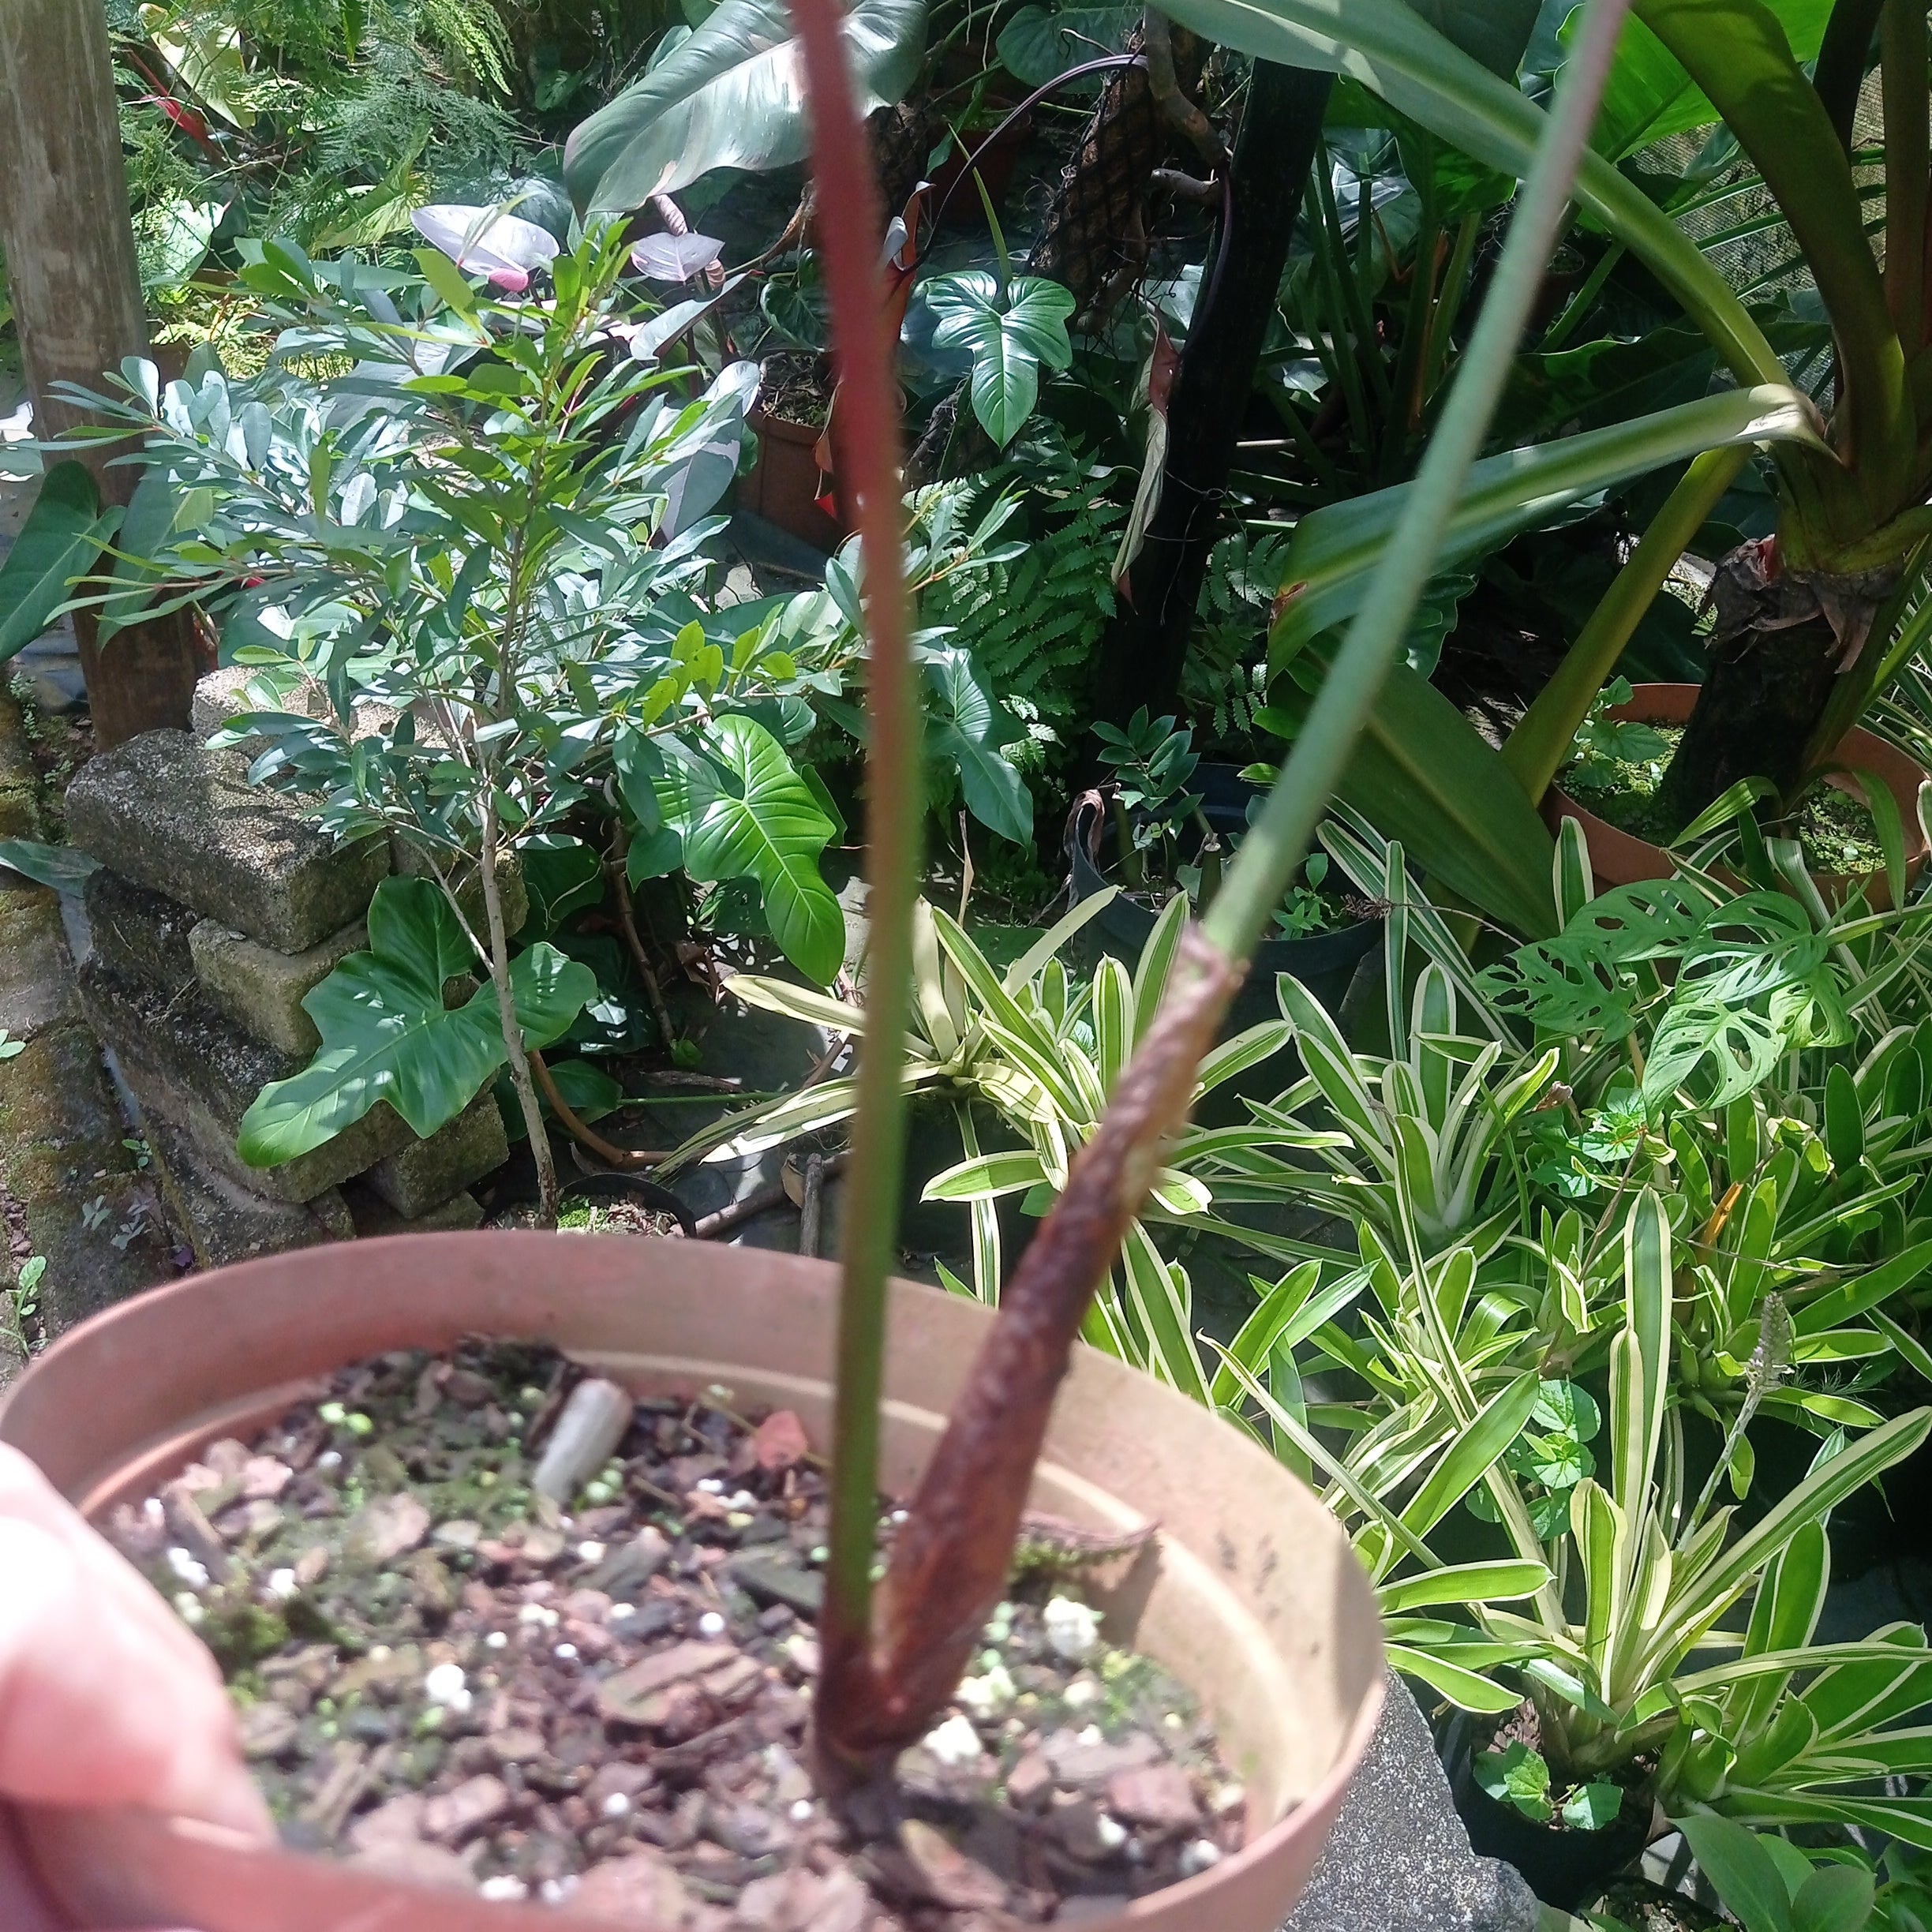 Philodendron sodiroi